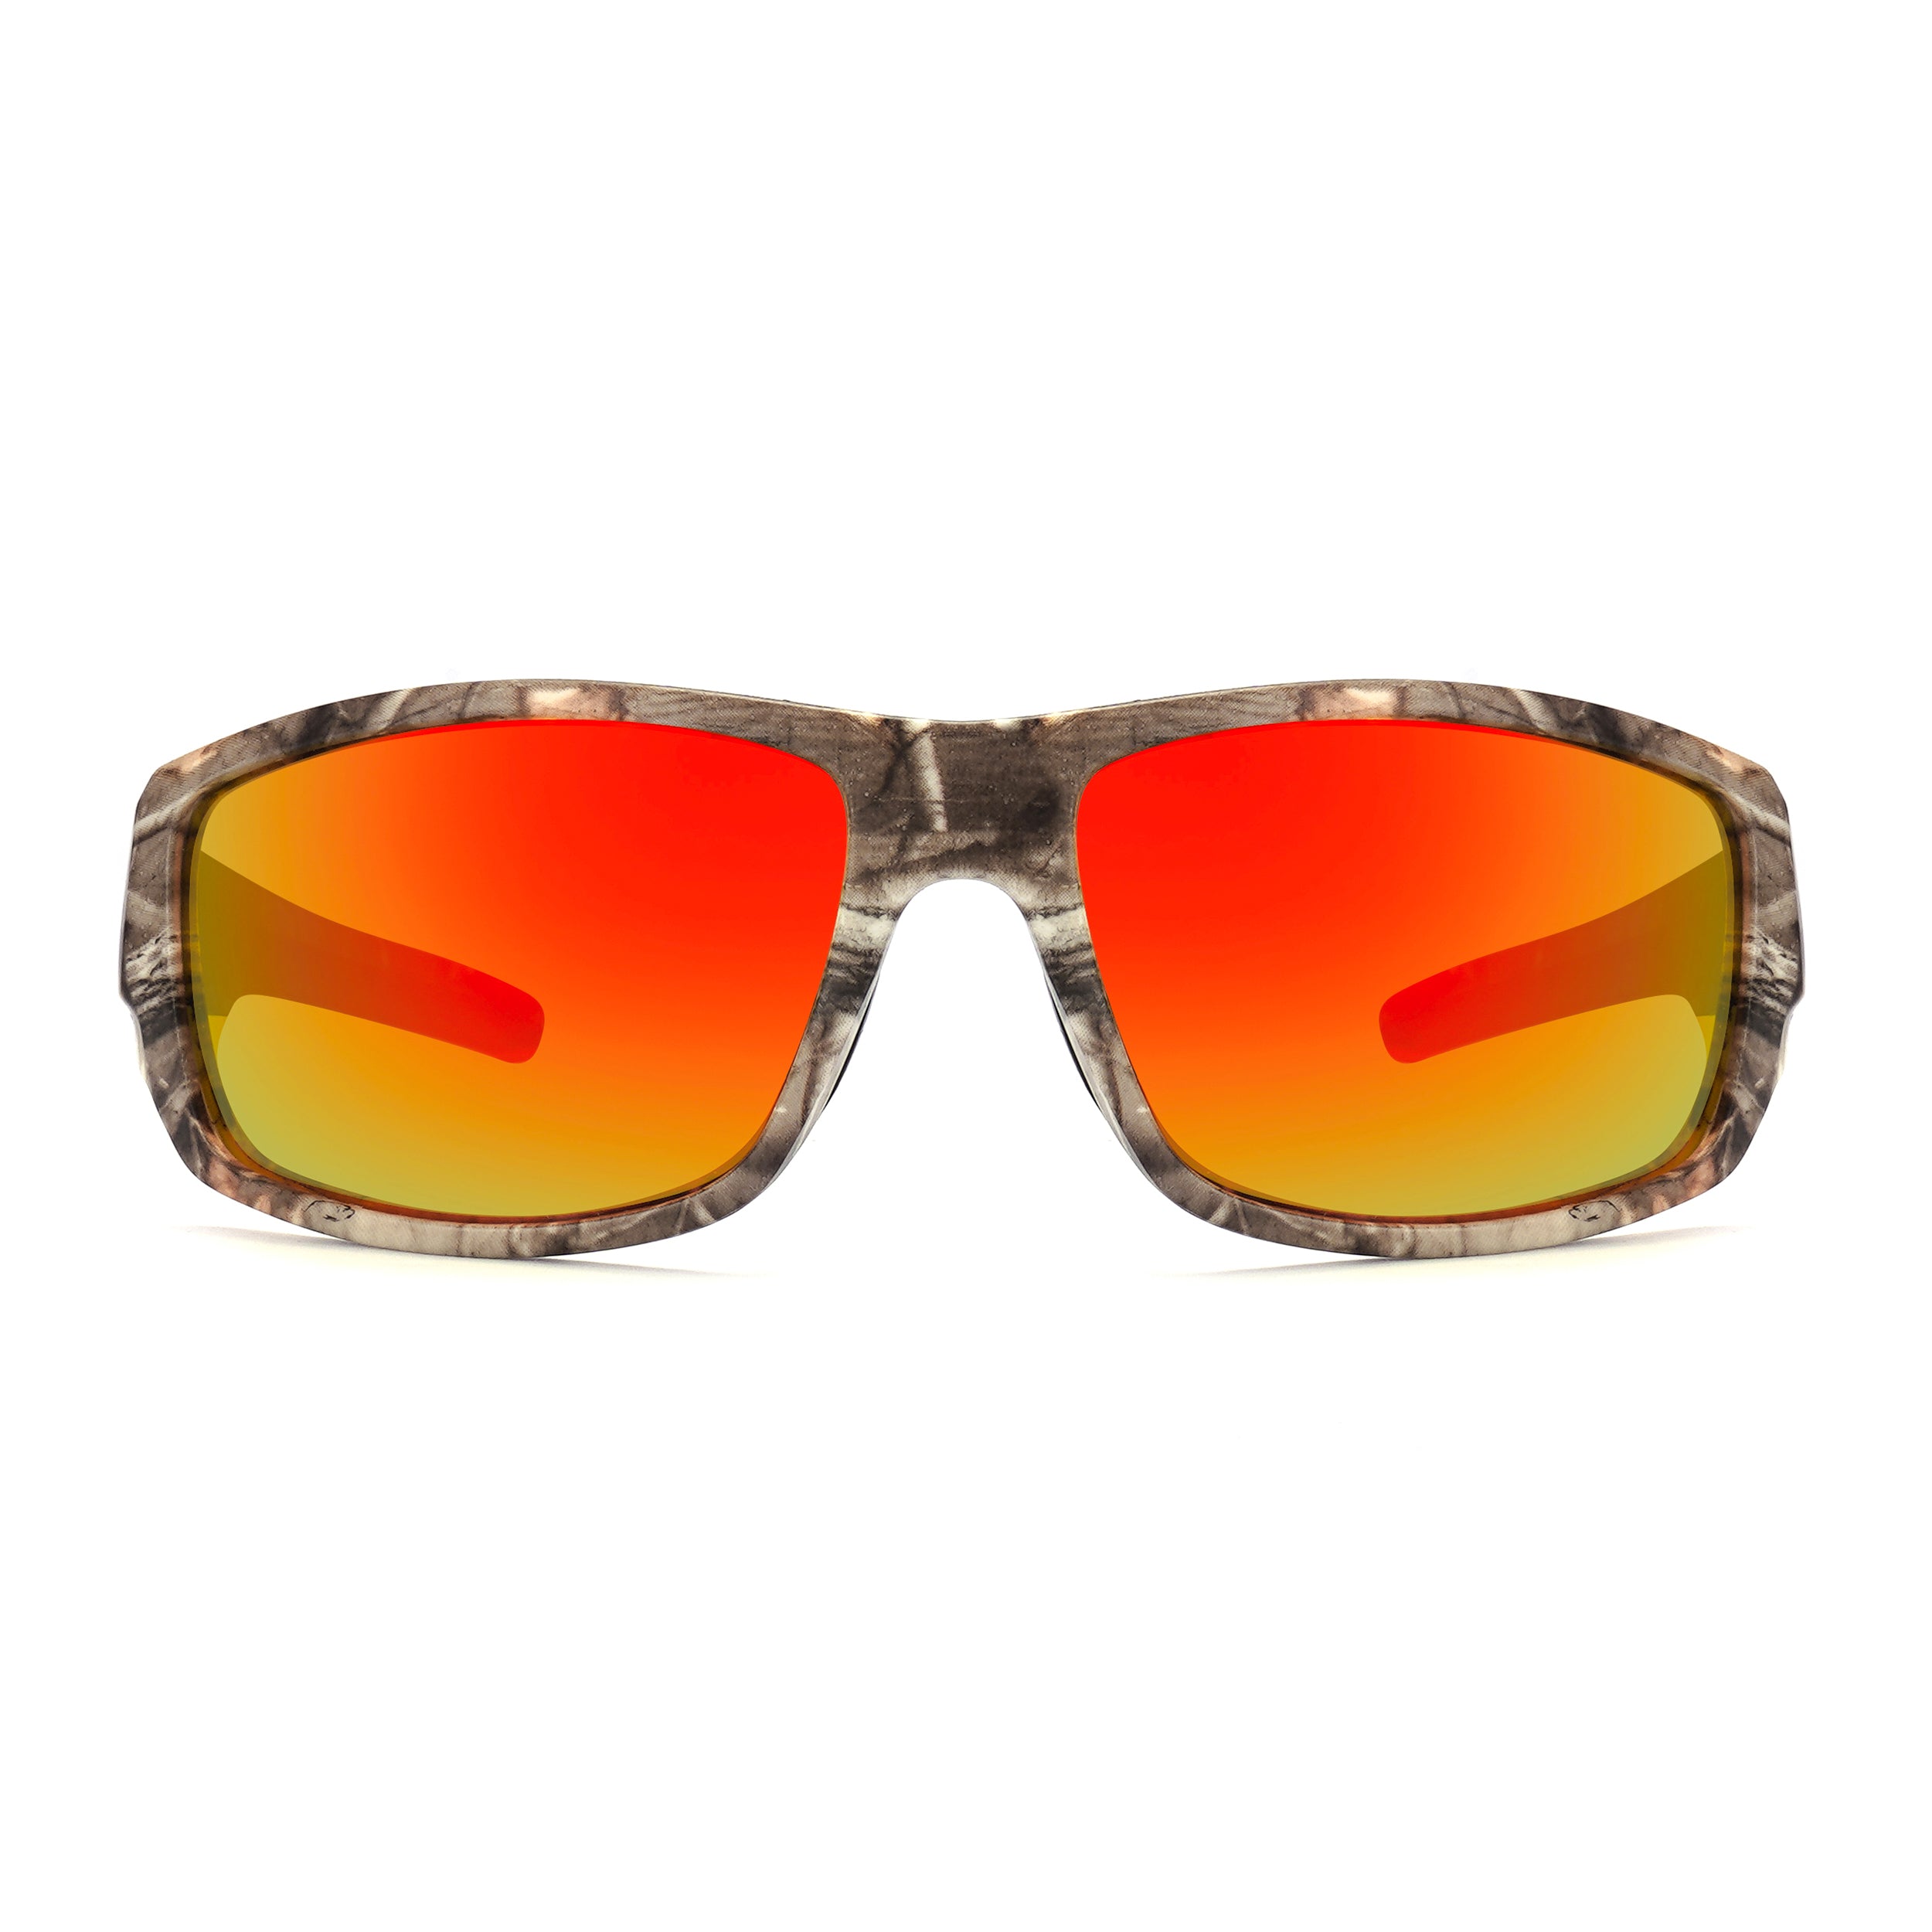 Cairo Camo Goggle Sunglasses